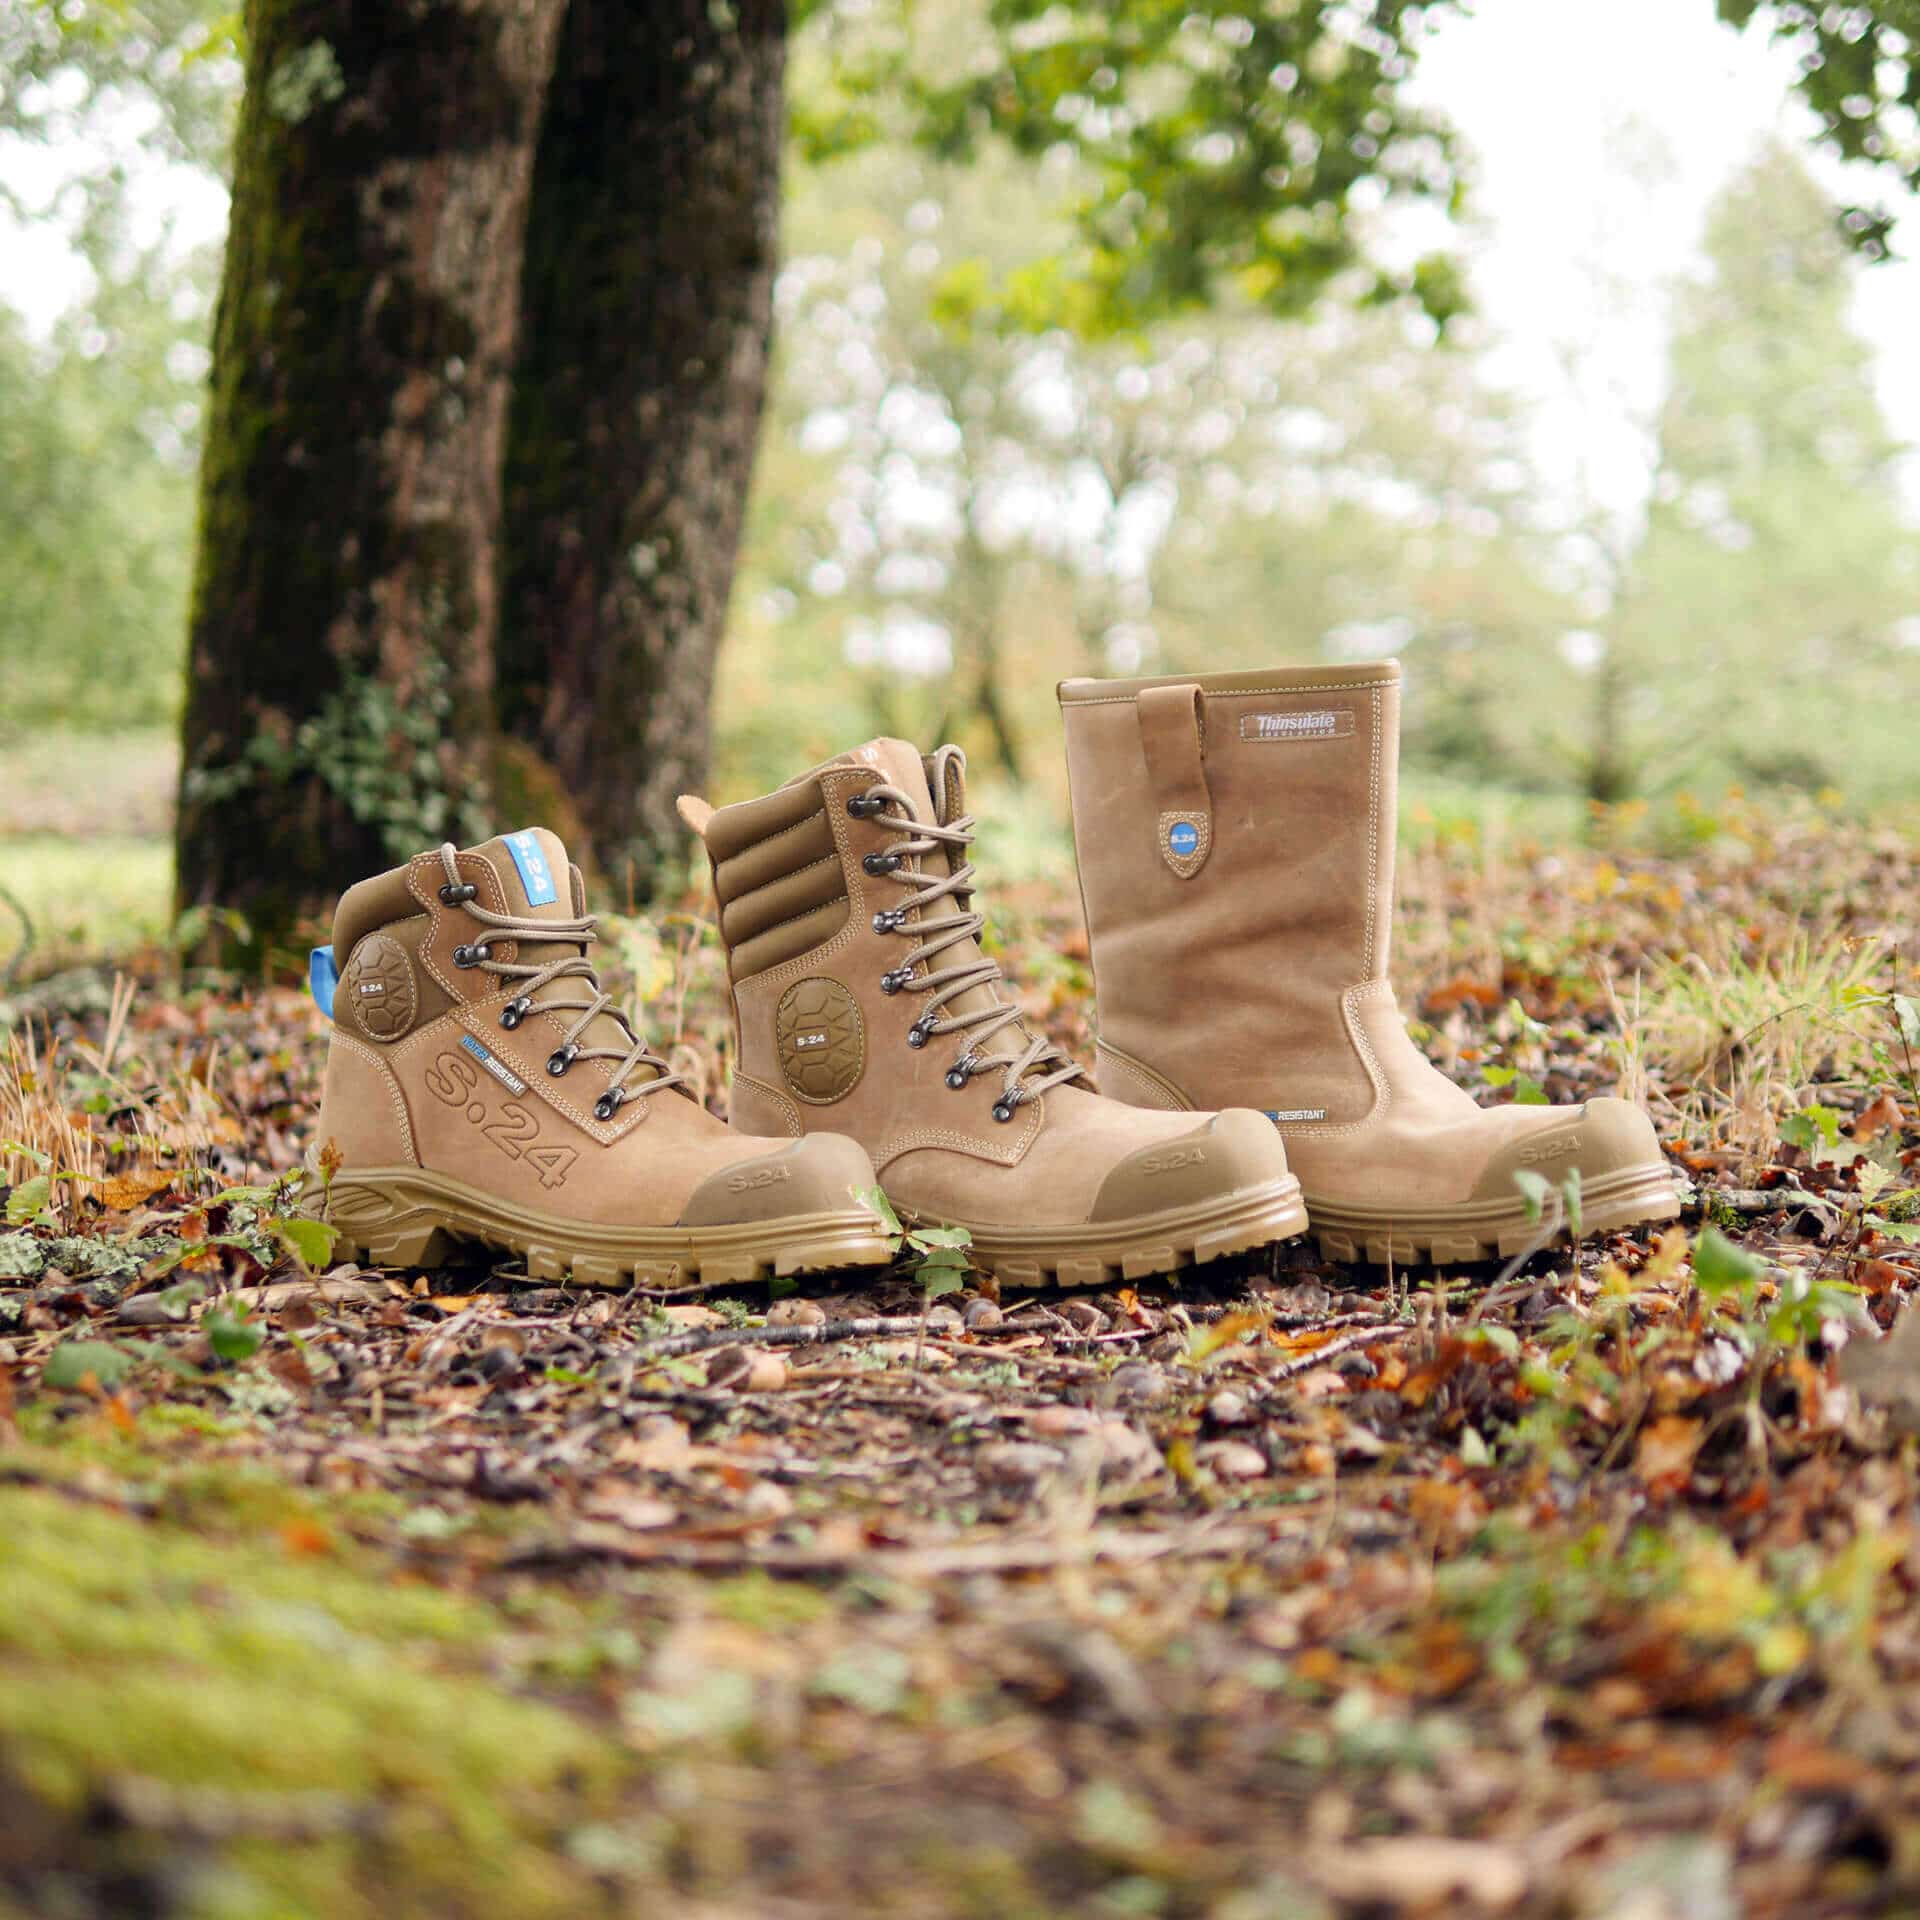 deux chaussures de sécurité et une botte de sécurité dans la forêt sur des feuilles marron